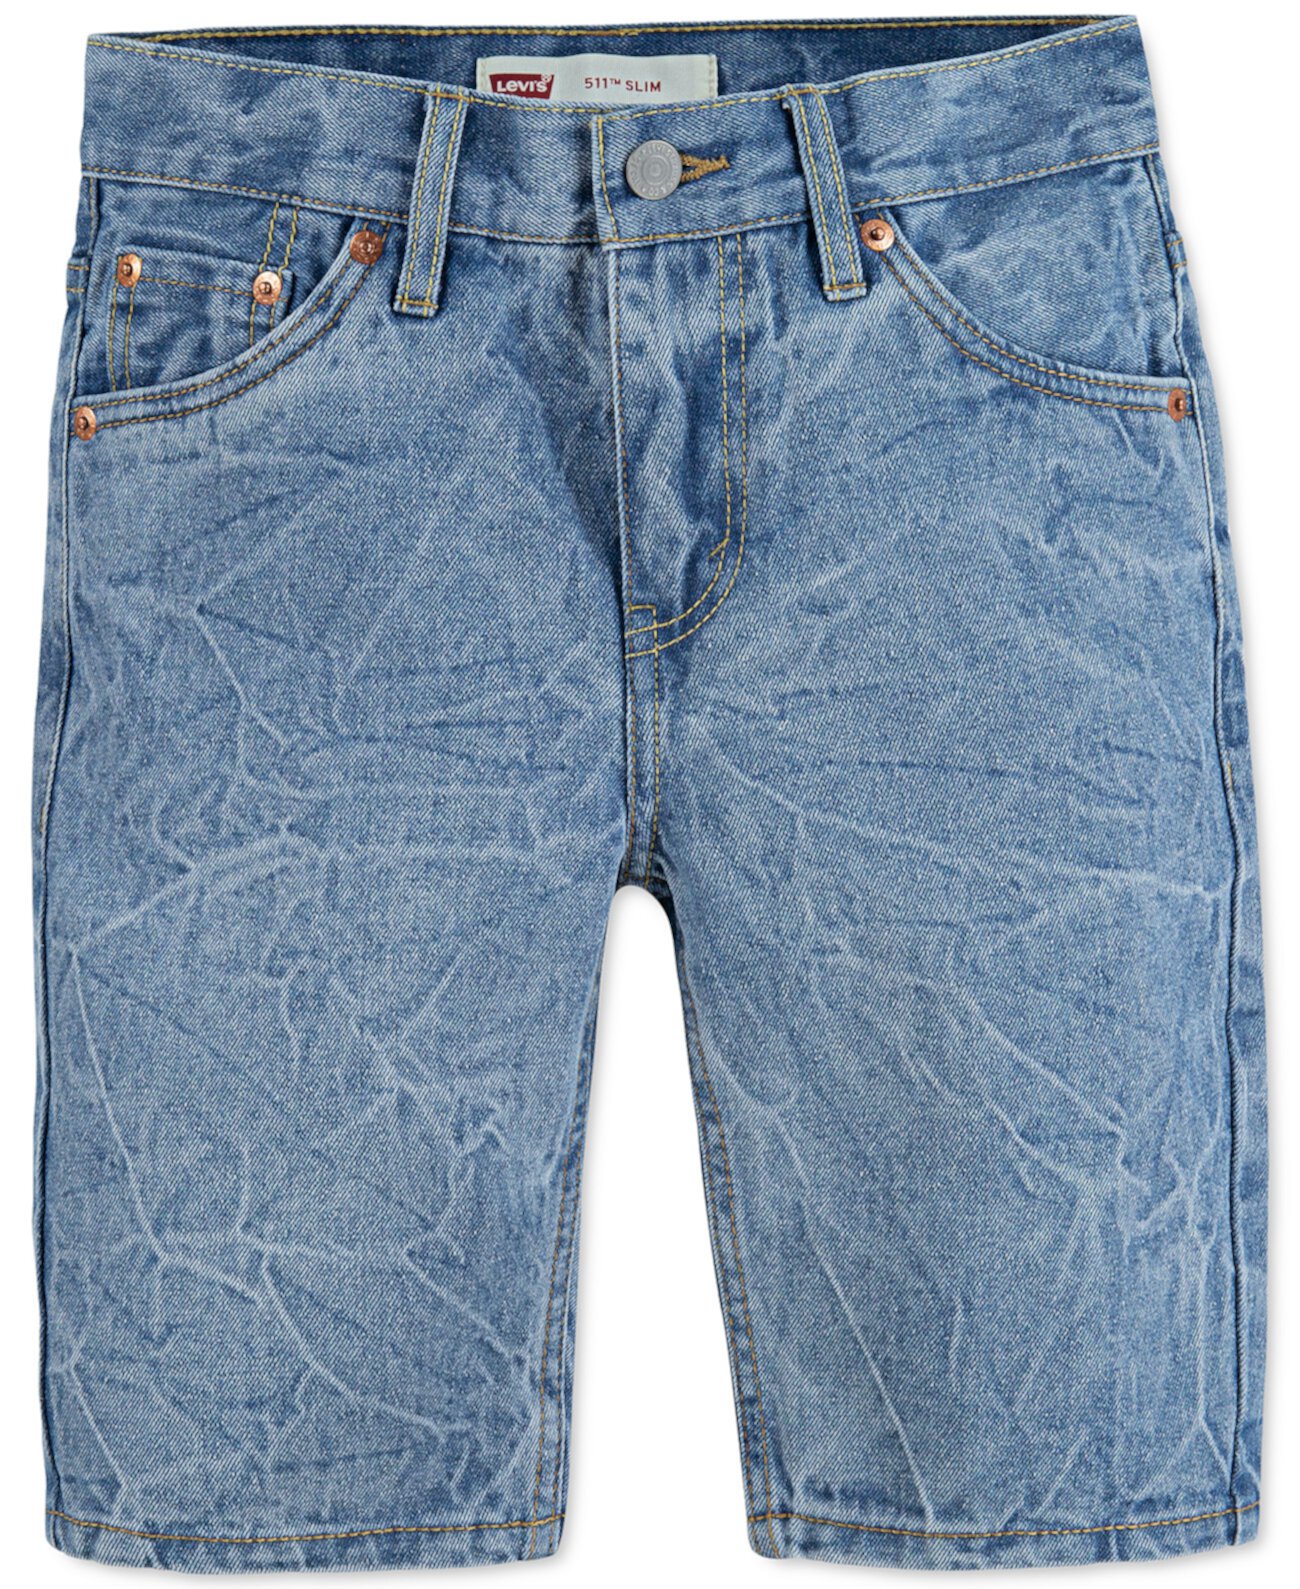 Узкие джинсовые шорты скинни UnBasic 511 ™ для малышей Levi's®